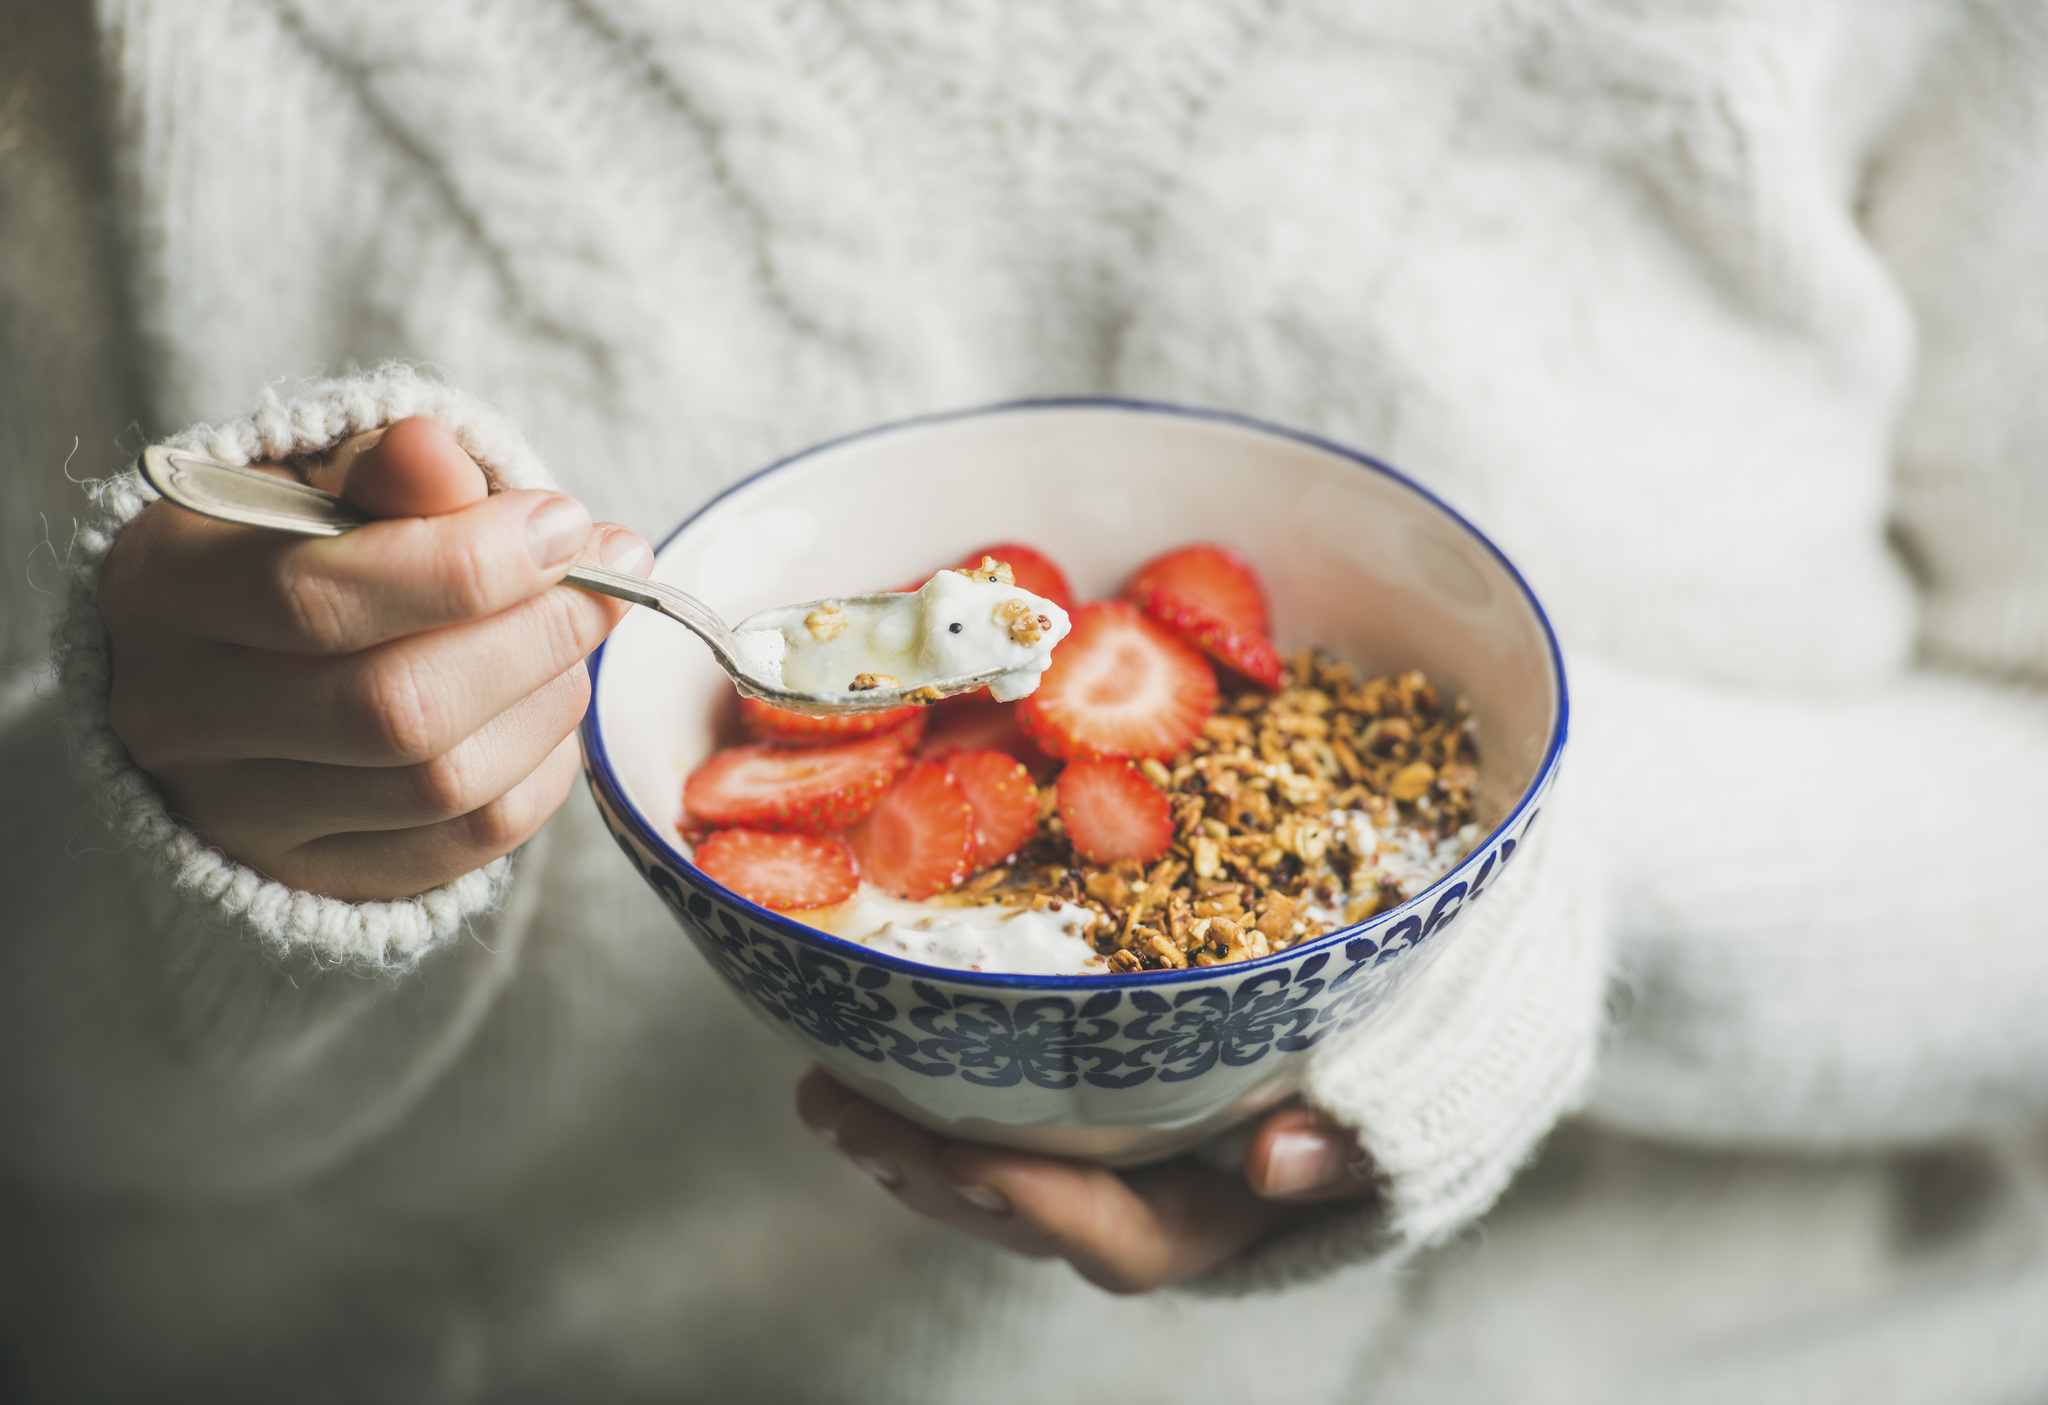 Los expertos dicen que desayunar y cenar a estas horas ayuda a prevenir enfermedades y adelgaza